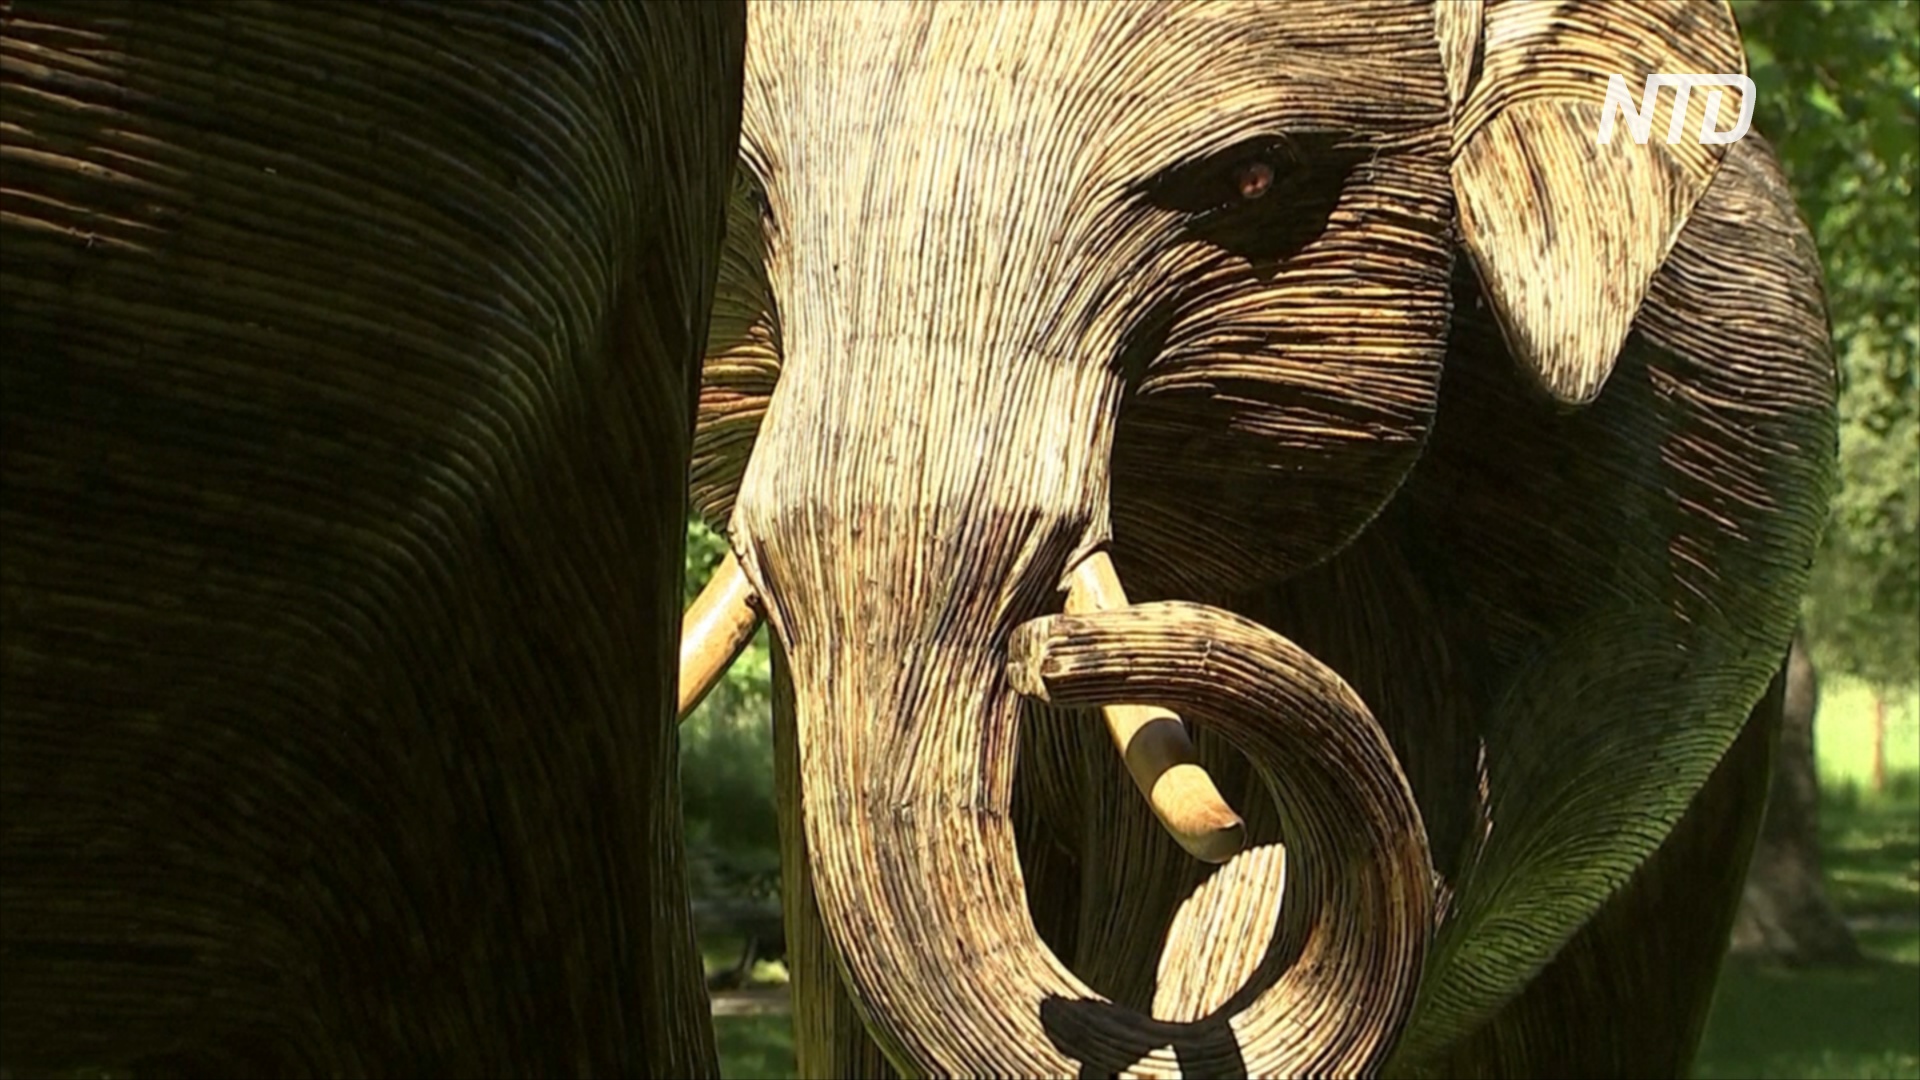 Городское сафари: в лондонских парках появилось 100 фигур слонов